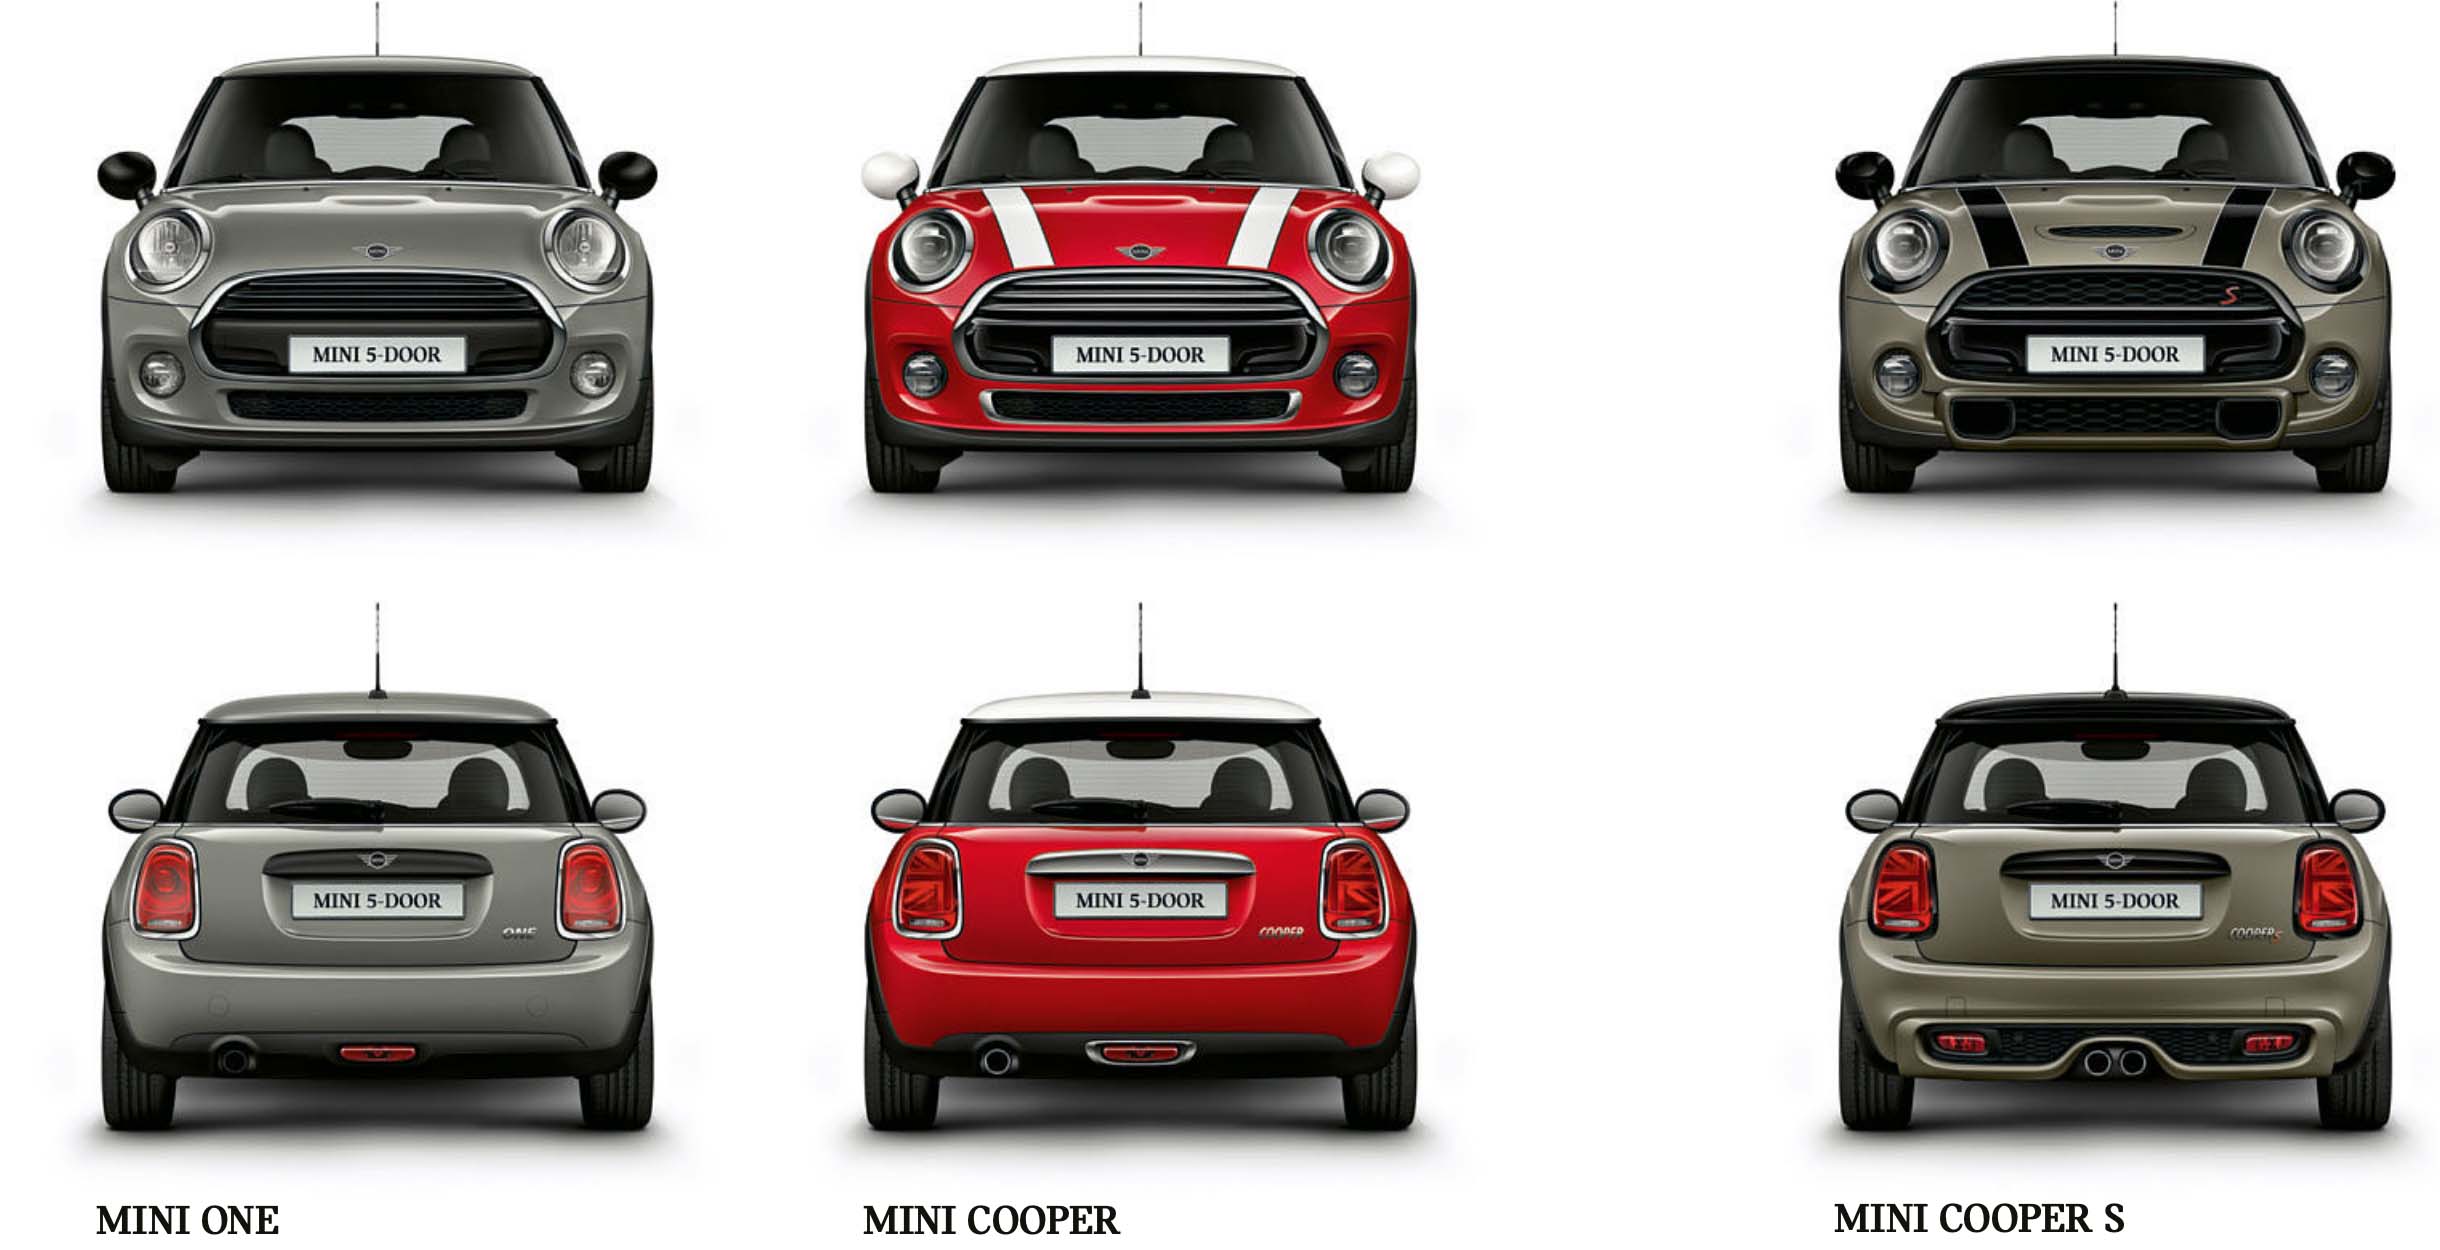 MINI 5-Door 以三車型販售：118 萬的 MINI One、145 萬的 MINI Cooper、169 萬的 MINI Coper S。 